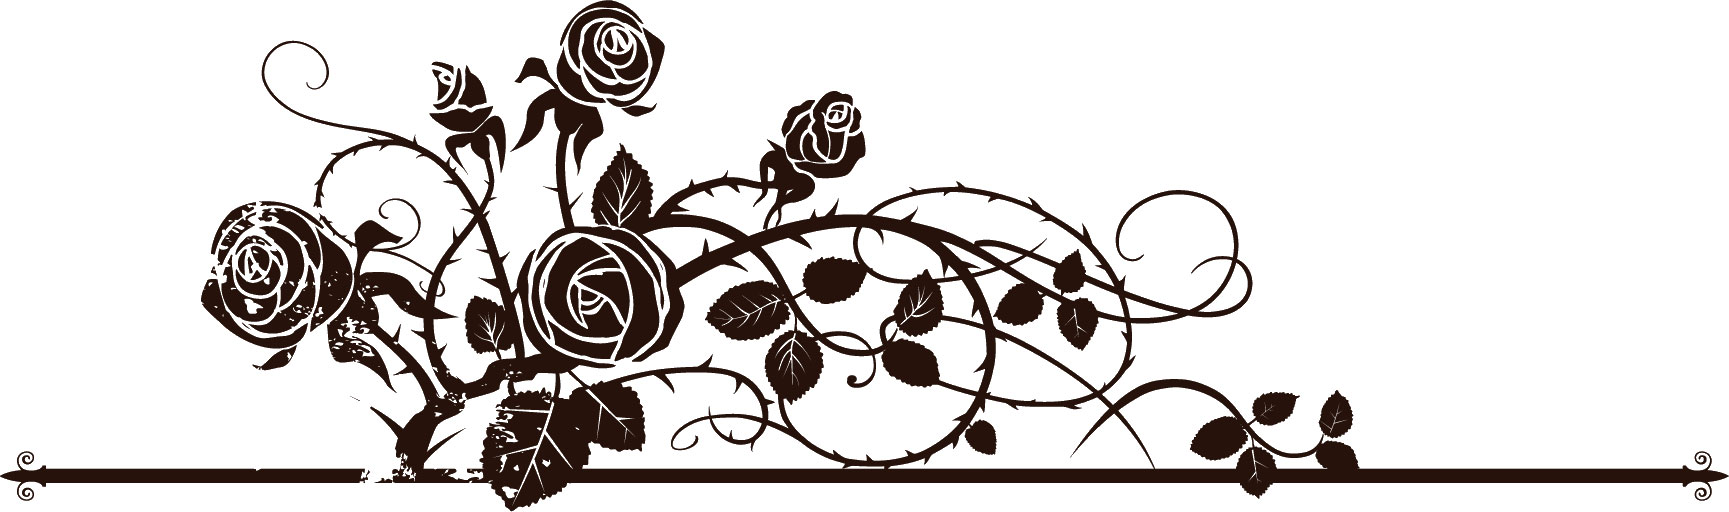 花のイラスト フリー素材 フレーム枠no 299 白黒 バラ模様